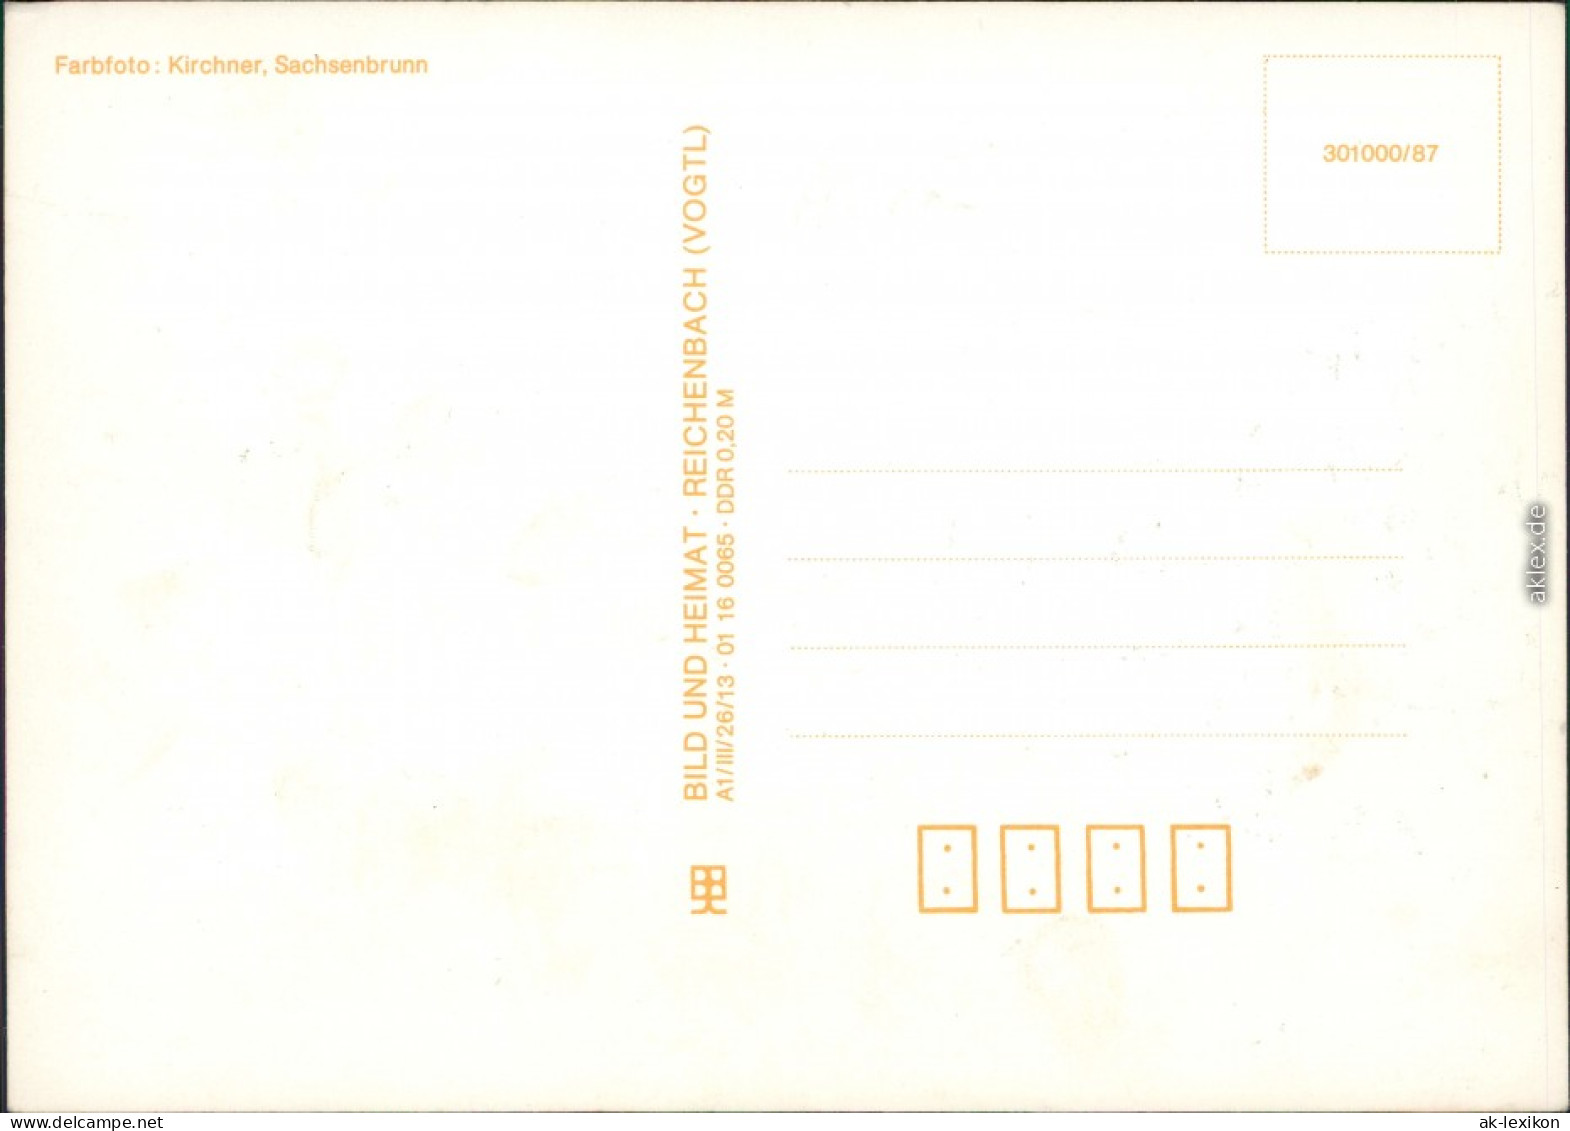 Ansichtskarte  Stimmungsbild, Mensch Auf Bergwiese Mit Wald 1987 - Unclassified